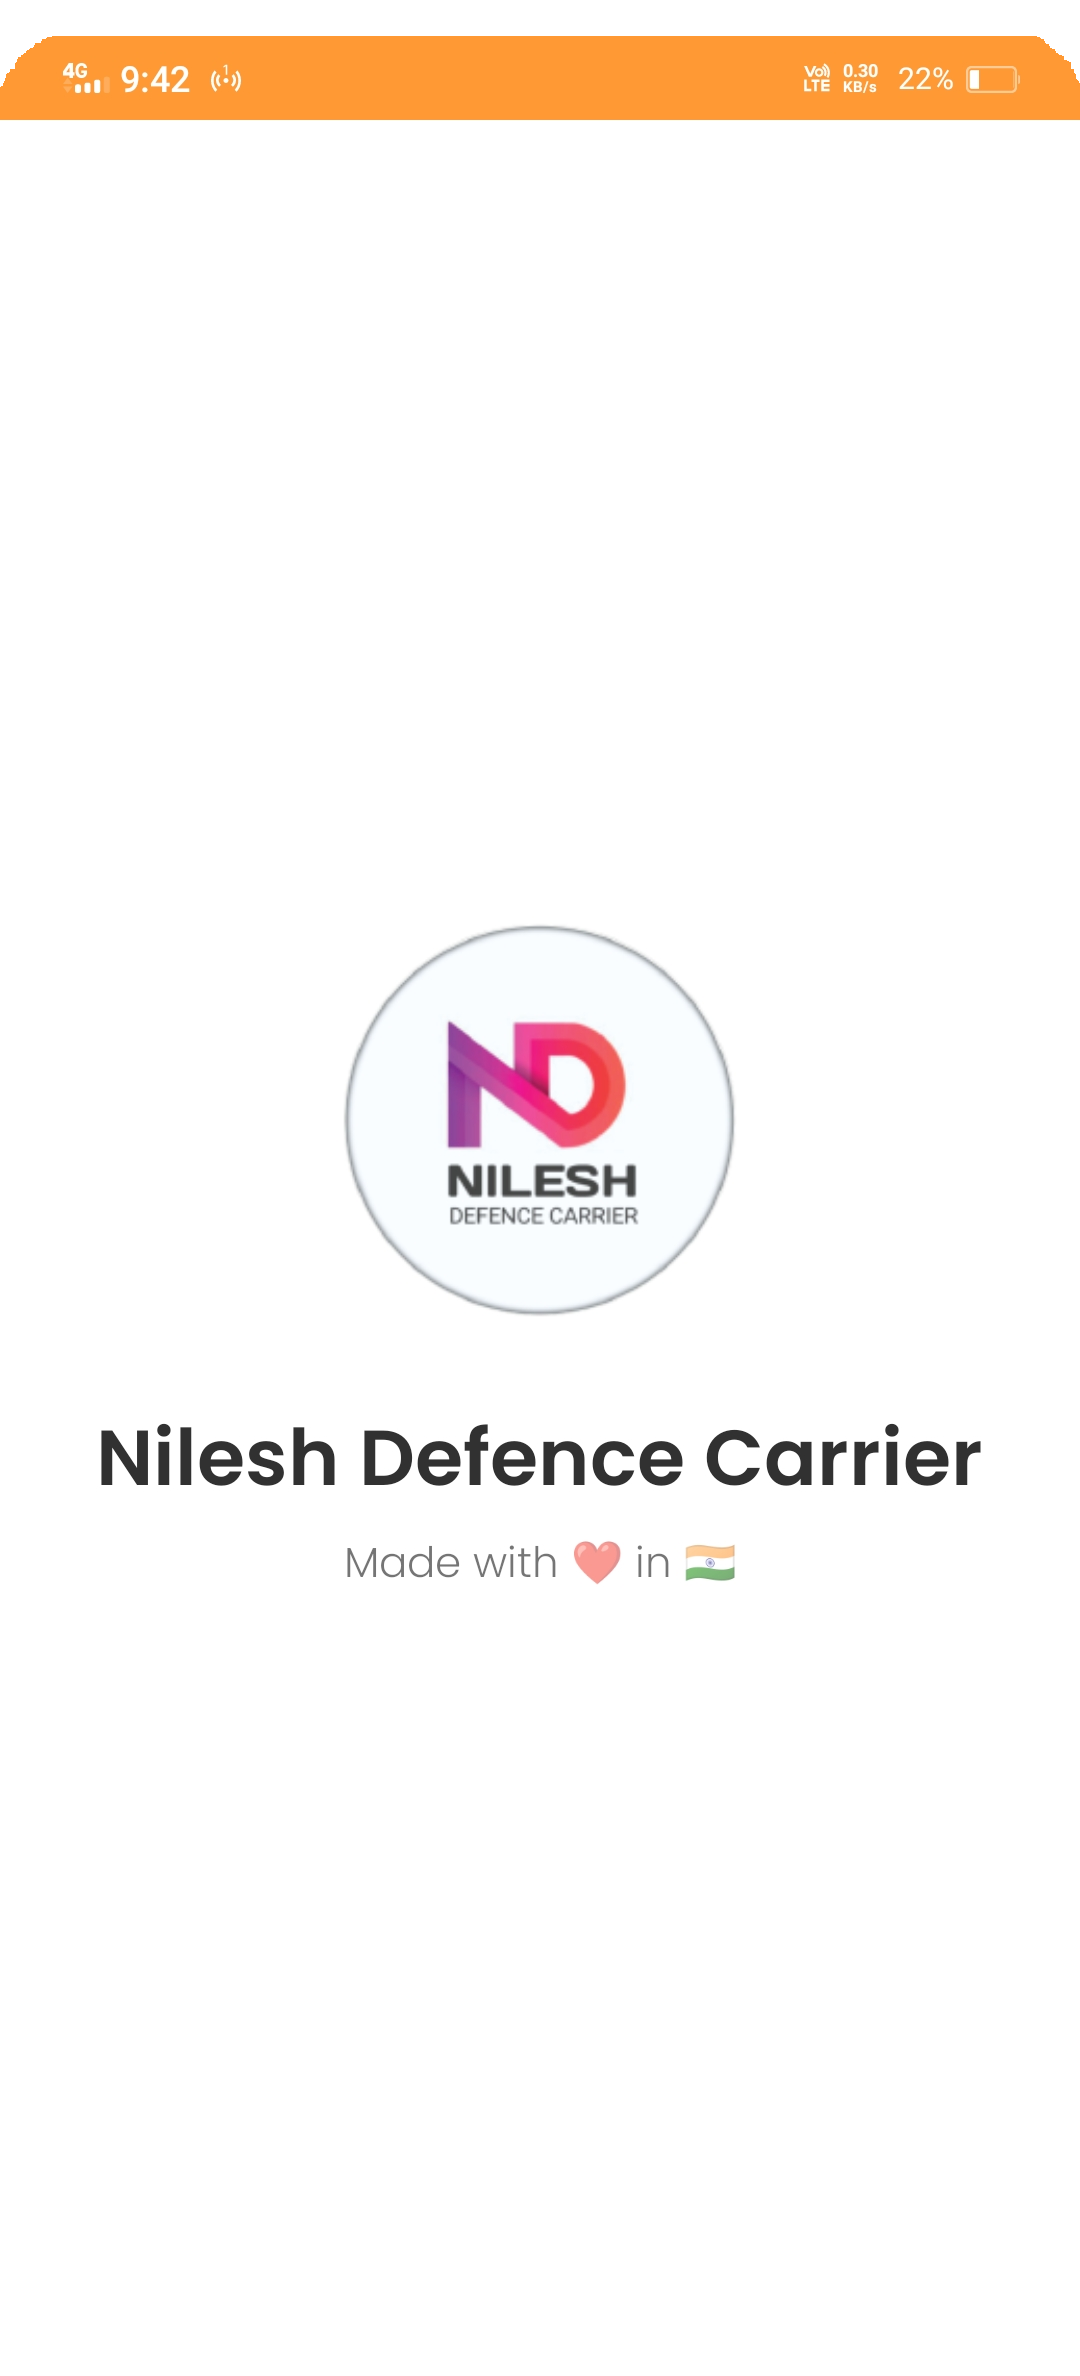 Nilesh name logo 😱🔥#shorts #youtubeshorts #logo #logodesign #trending -  YouTube